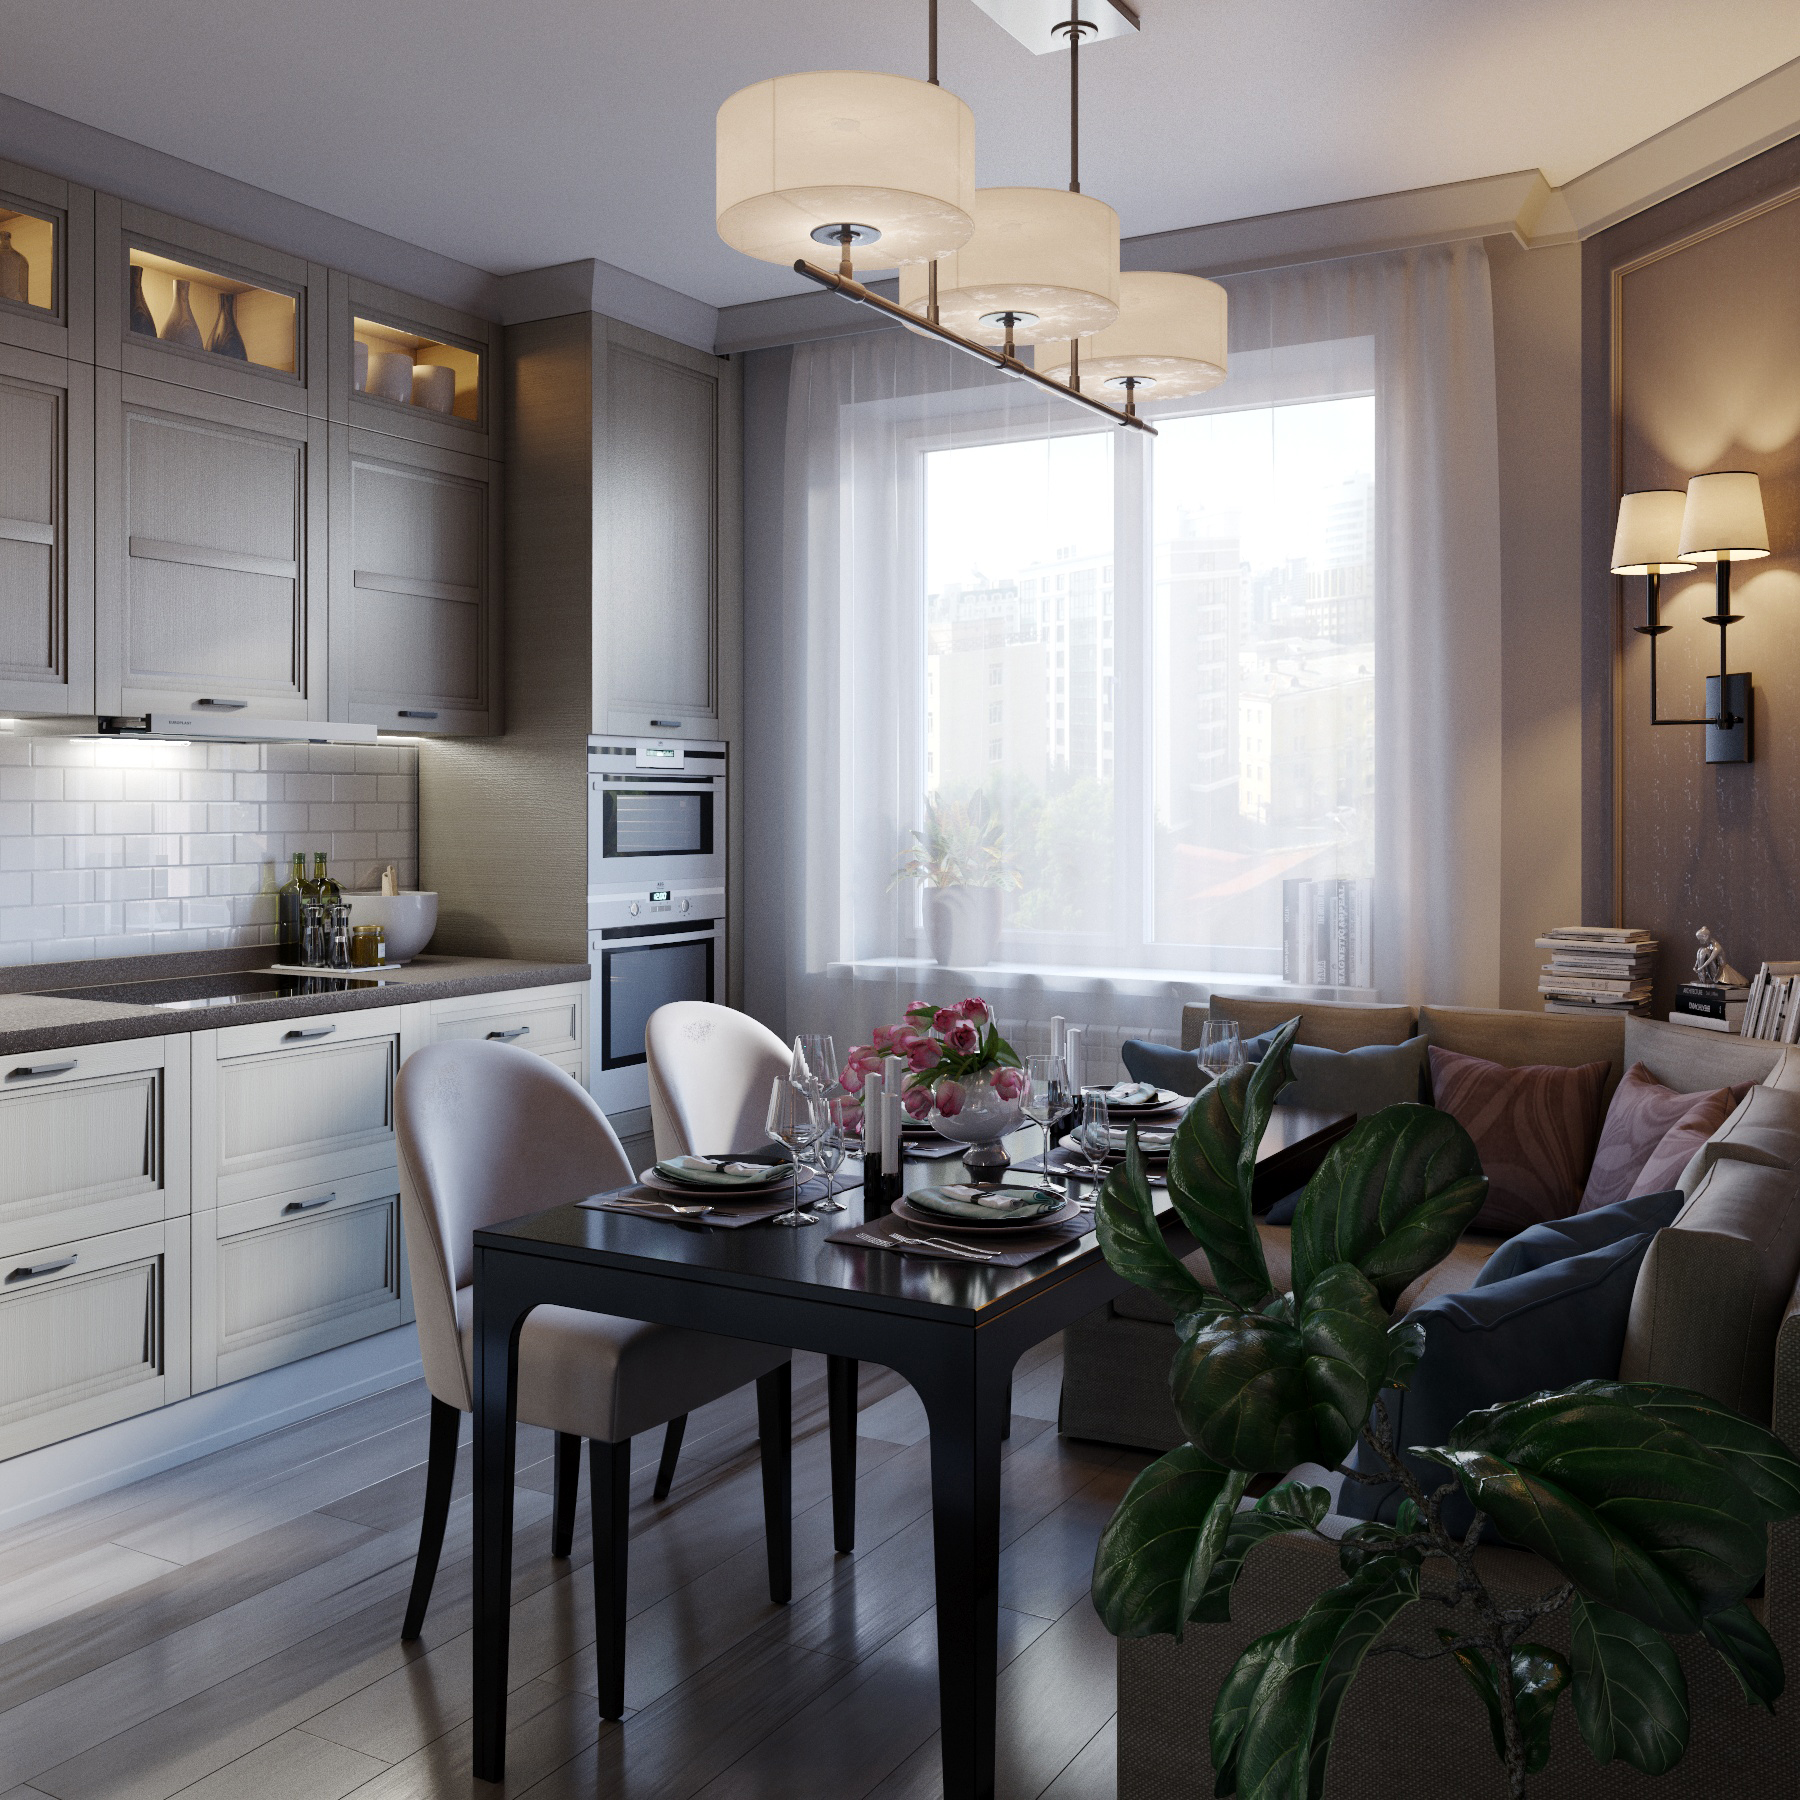 Кухня с комфортом в 3d max corona render изображение